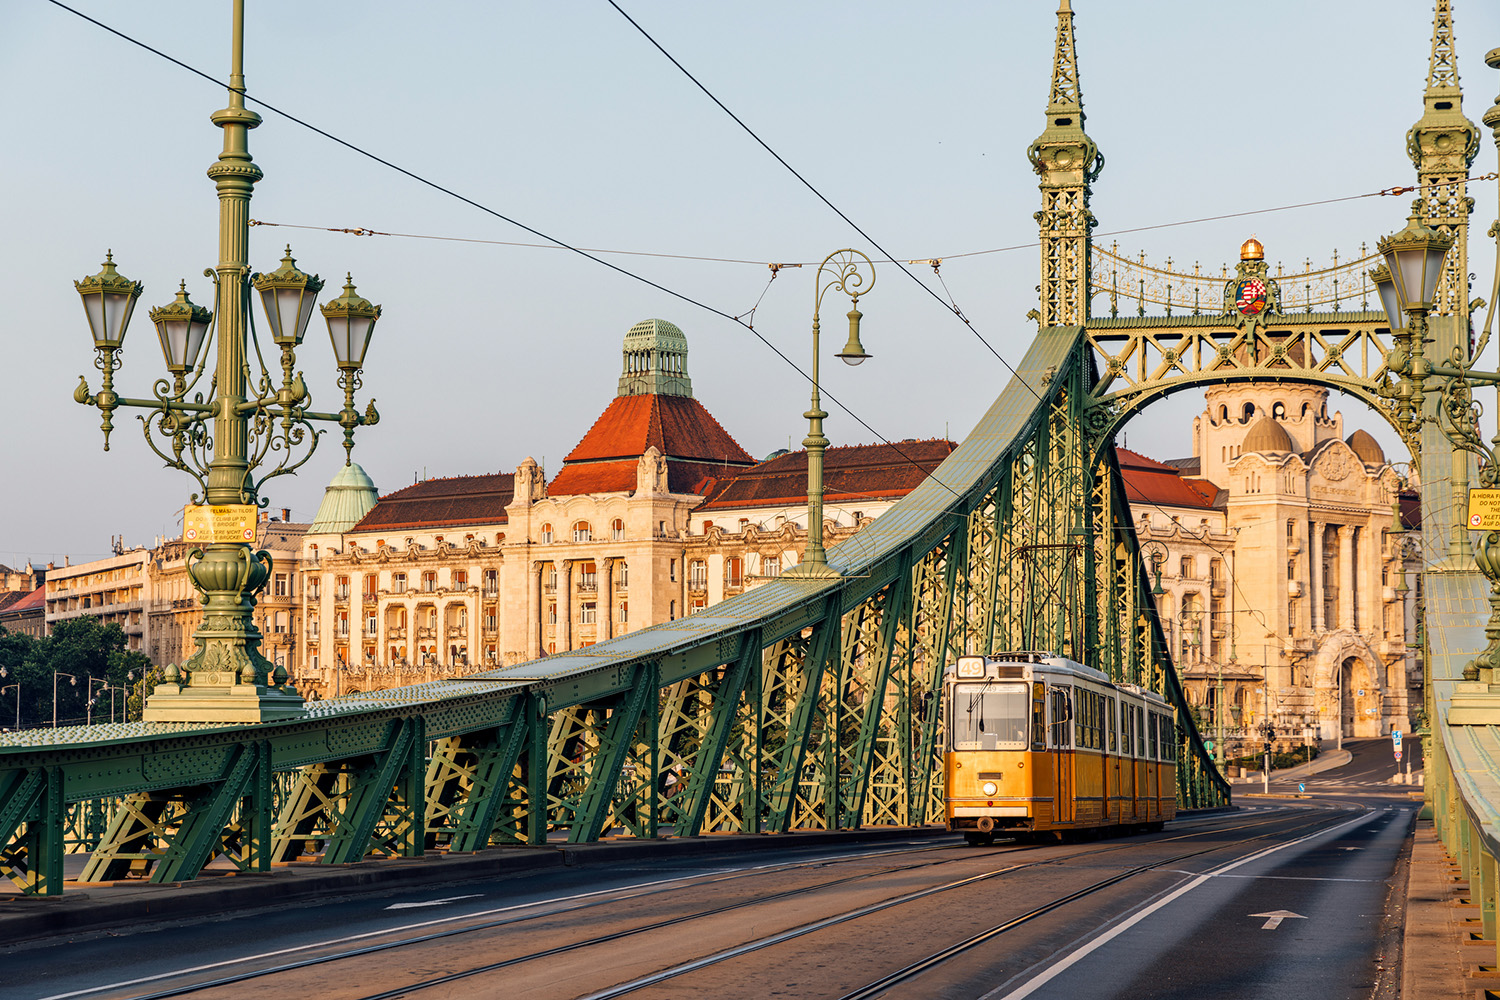 Cầu Tự Do nối liền hai bờ Buda và Pest của thành phố Budapest. (Ảnh: Alexander Spatari/Getty Images)